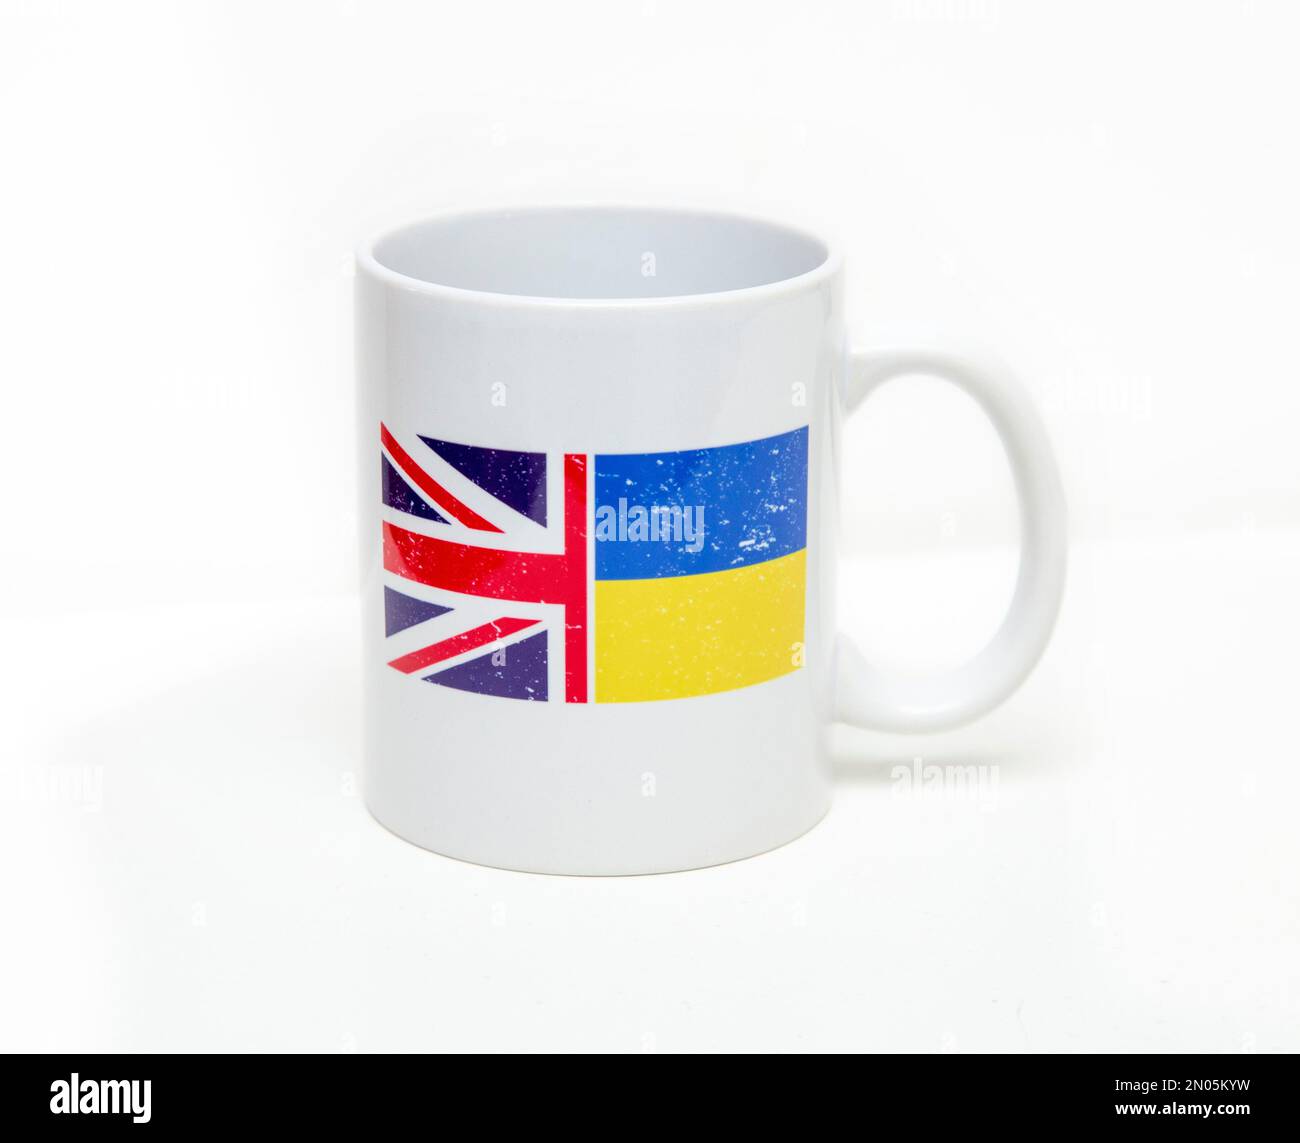 Kaffeetasse, die Unterstützung für die ukrainische Flagge und eine Union Jack UK-Flagge zeigt, Katastrophenhilfe, DEZ, Rotes Kreuz finanziert Unterstützung. Stockfoto